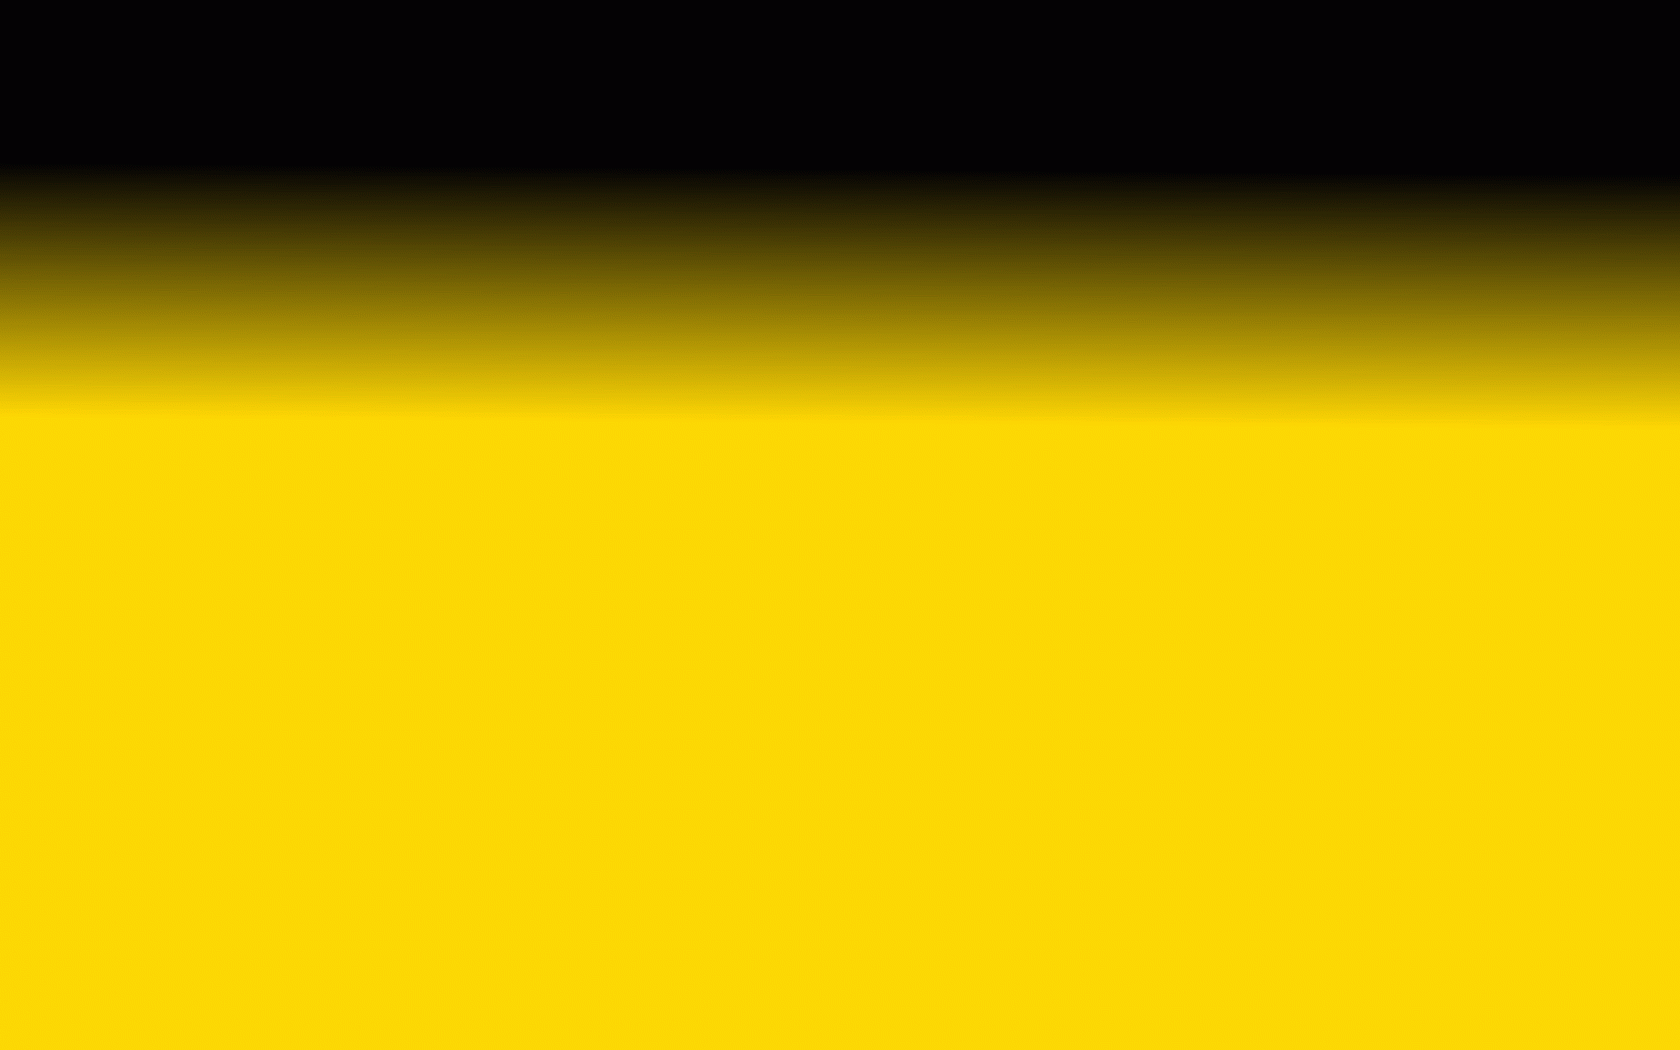 Cùng thưởng thức màu vàng tươi sáng từ hình nền gradient miễn phí độc đáo này để tạo cảm hứng chinh phục mọi thử thách trong cuộc sống.